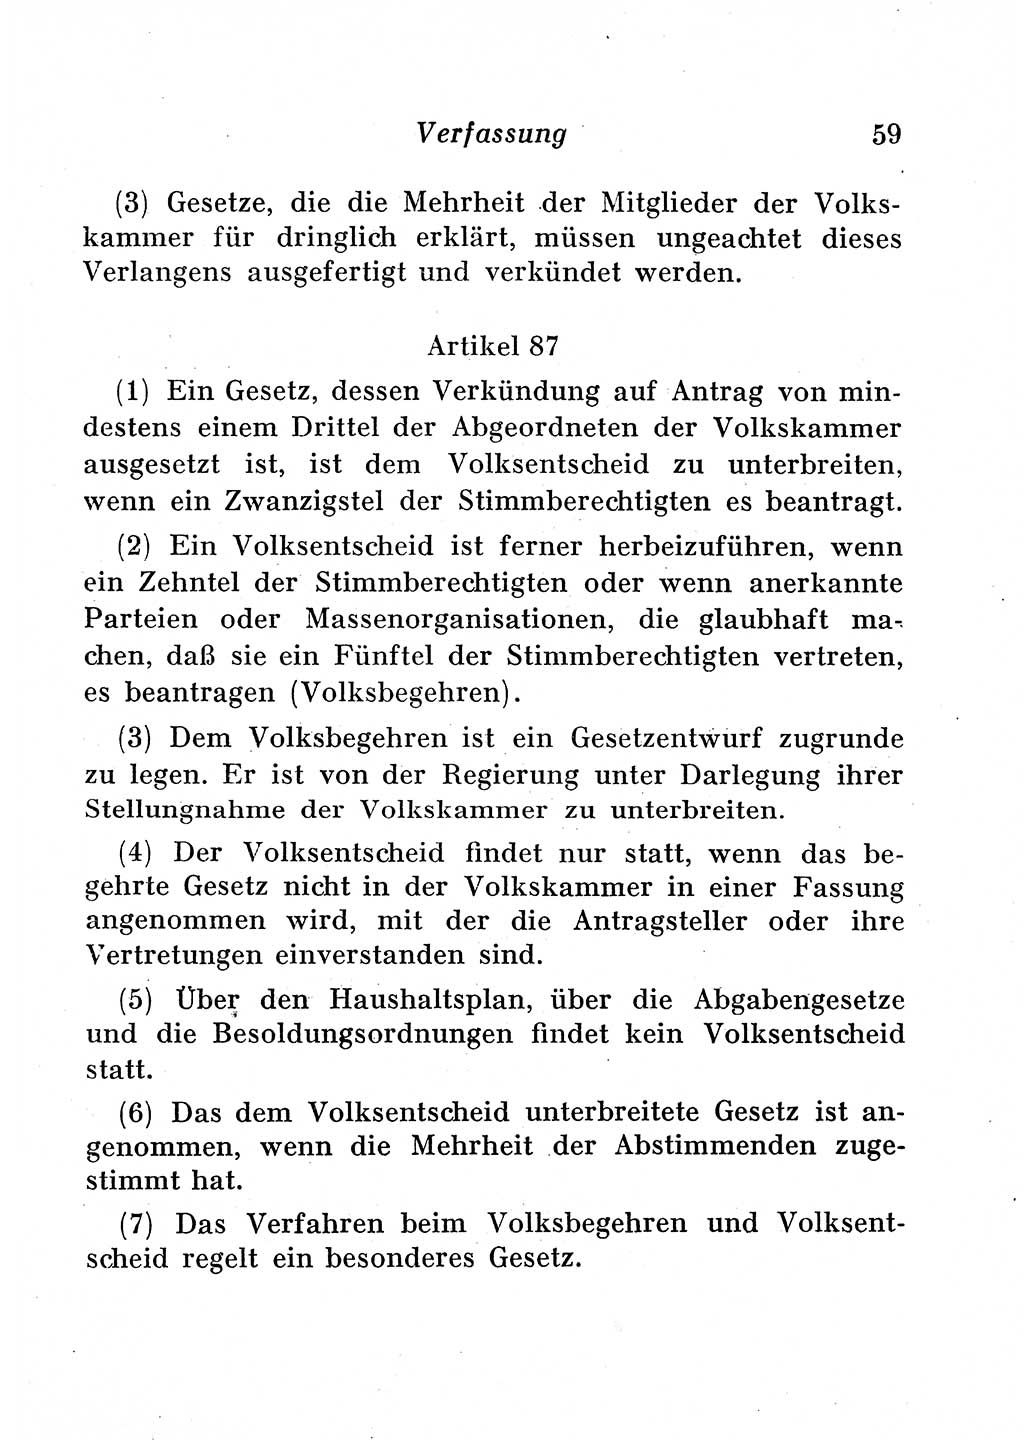 Staats- und verwaltungsrechtliche Gesetze der Deutschen Demokratischen Republik (DDR) 1958, Seite 59 (StVerwR Ges. DDR 1958, S. 59)